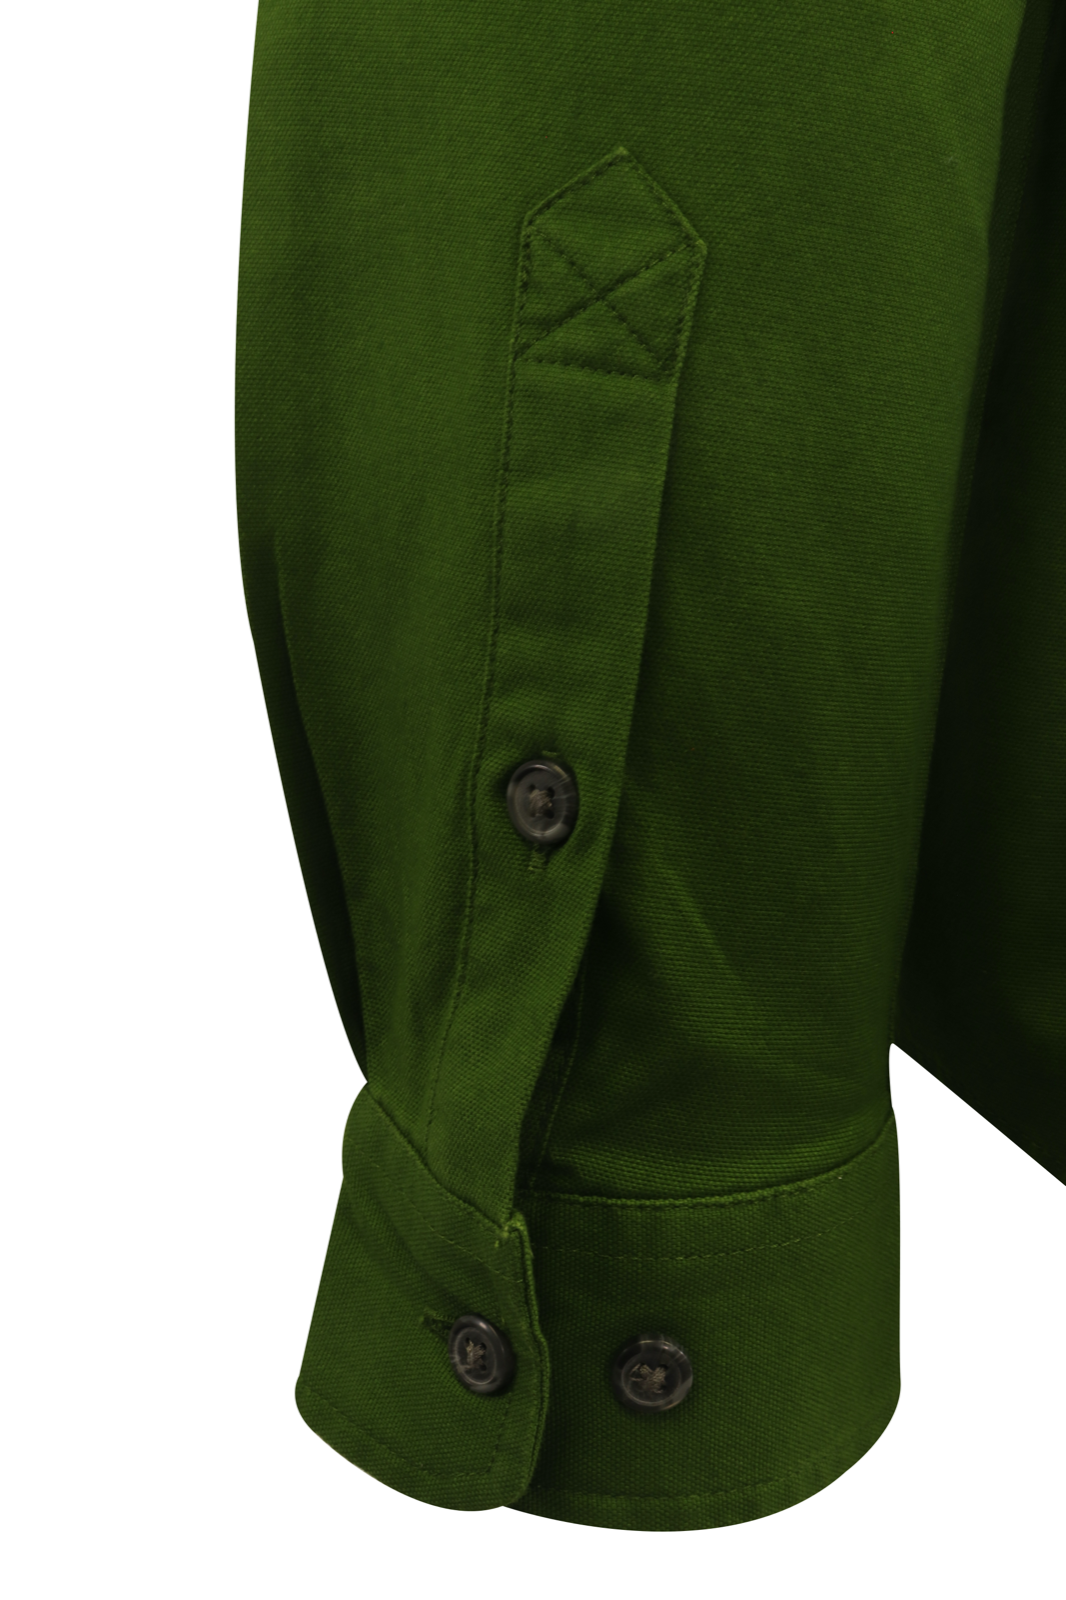 Carhartt Men's Flannel Shirt Lime Green Rugged Long Sleeve (328)